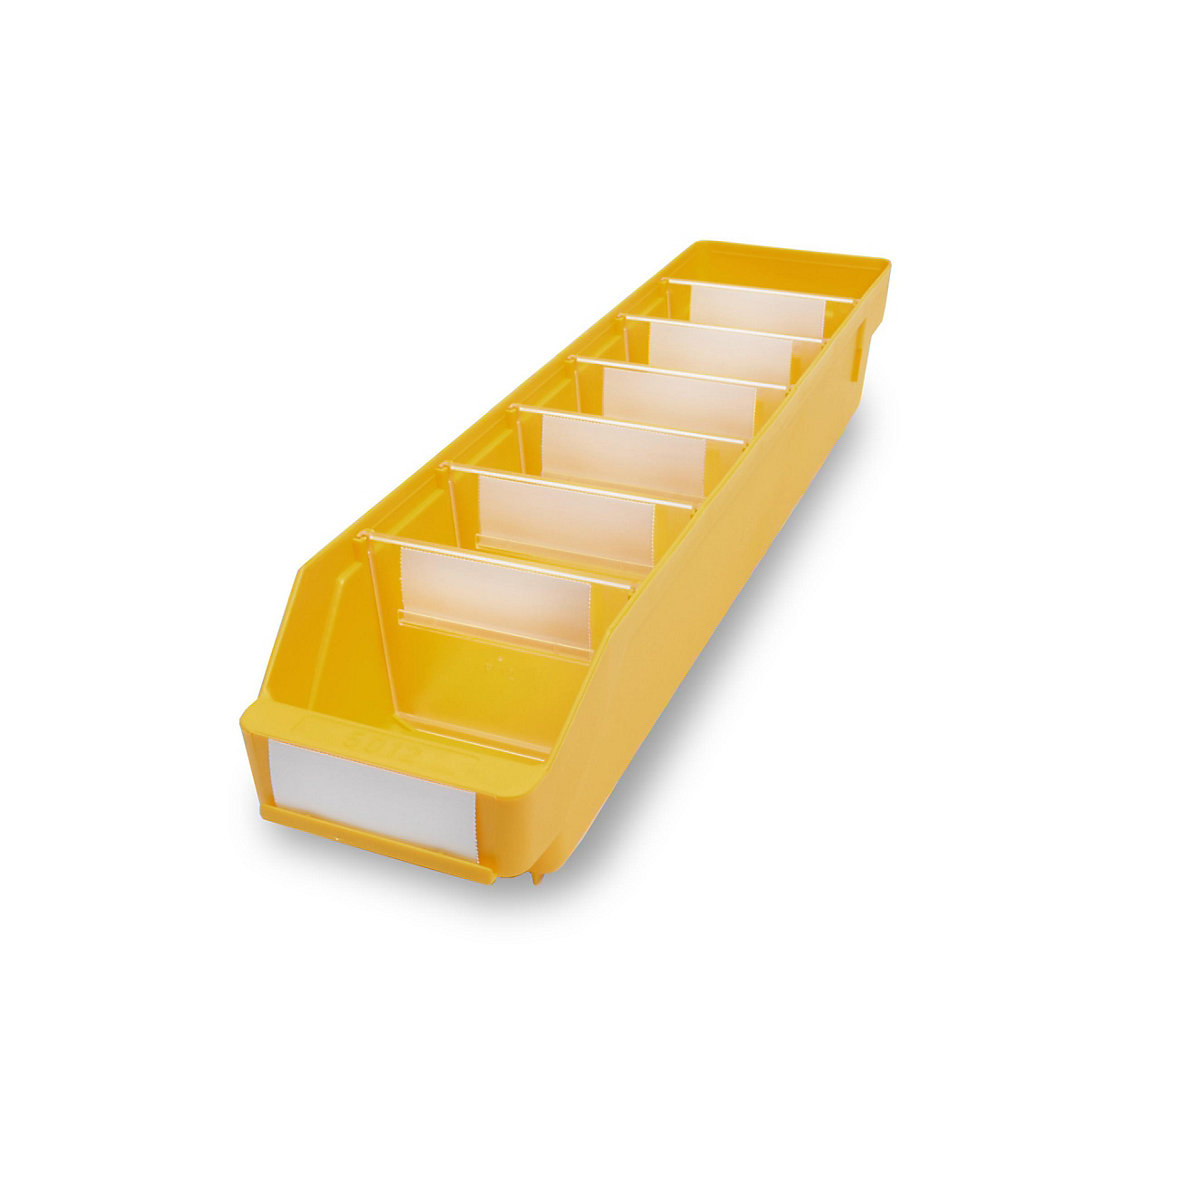 STEMO Regalkasten aus hochschlagfestem Polypropylen, gelb, LxBxH 500 x 118 x 95 mm, VE 30 Stk